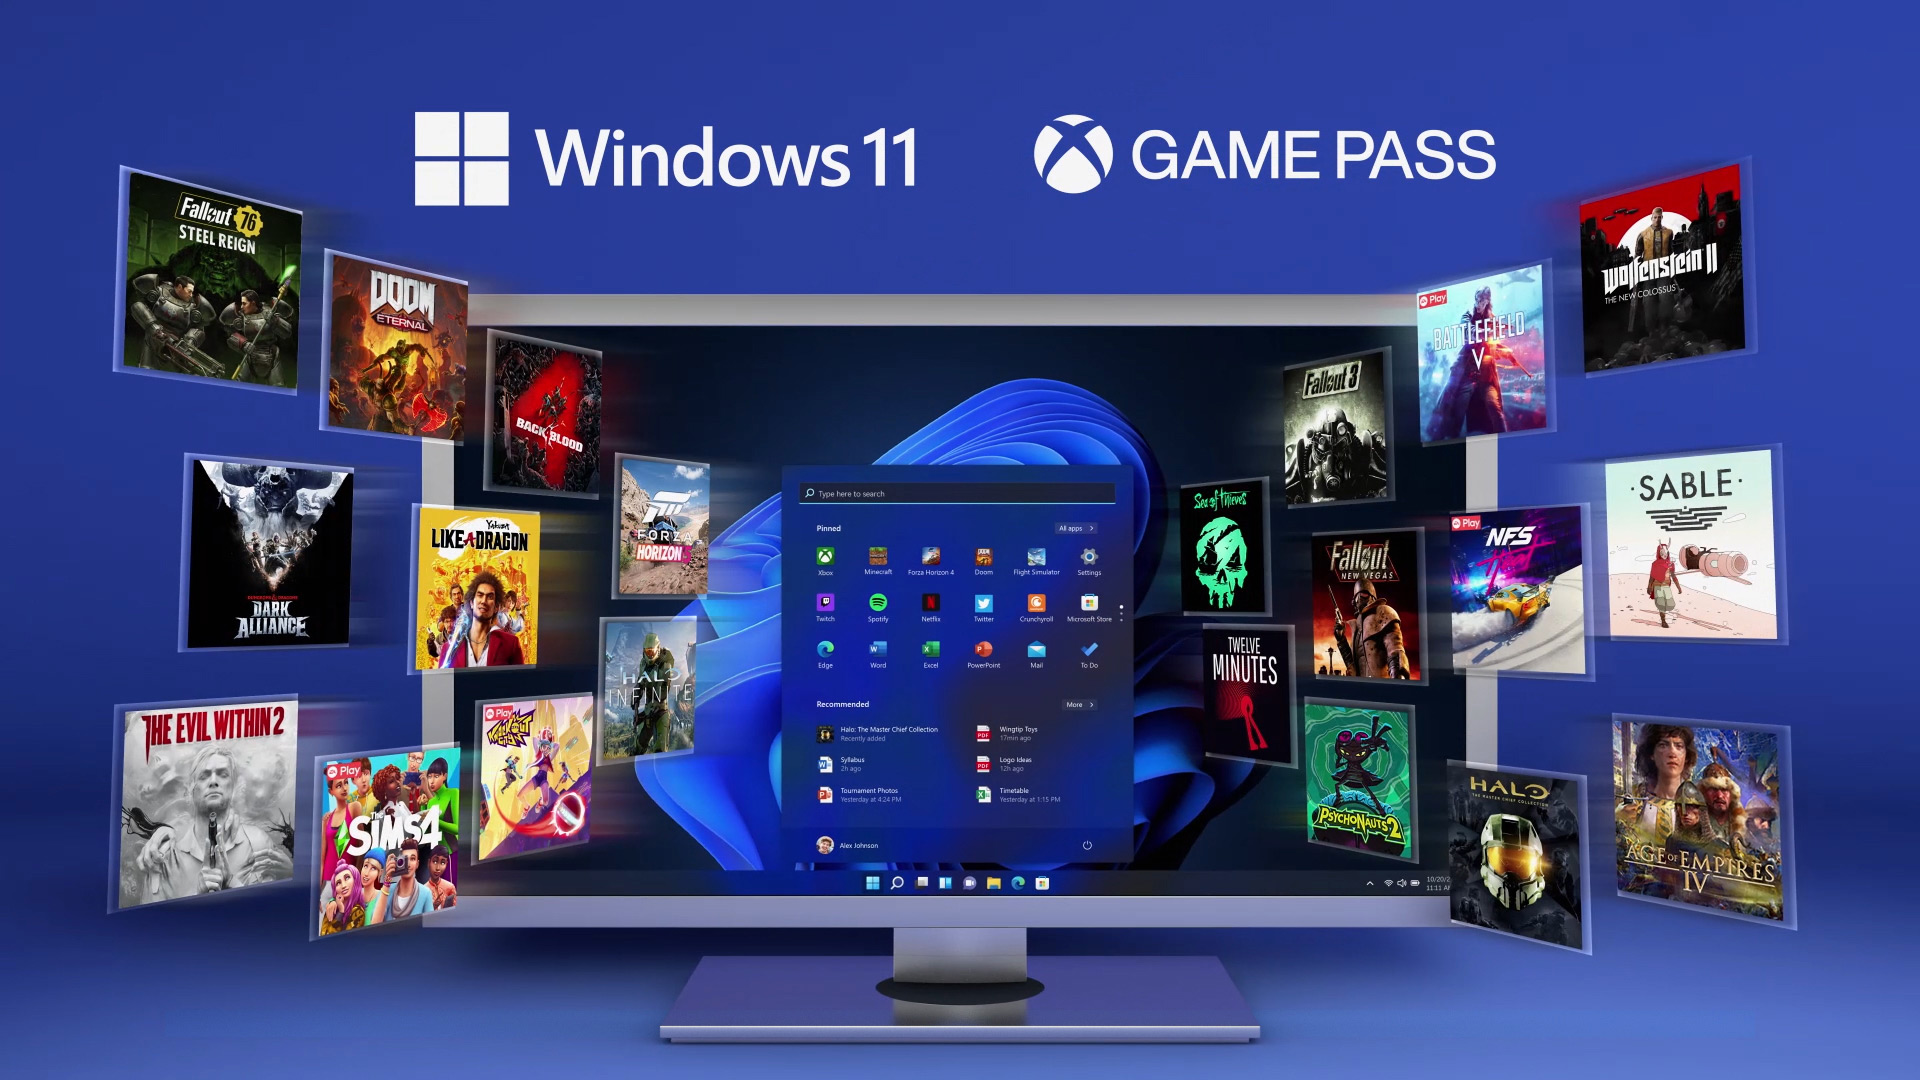 一台螢幕顯示 Windows 11 花朵畫面和釘選的應用程式視窗，並且有許多不同遊戲圍繞著